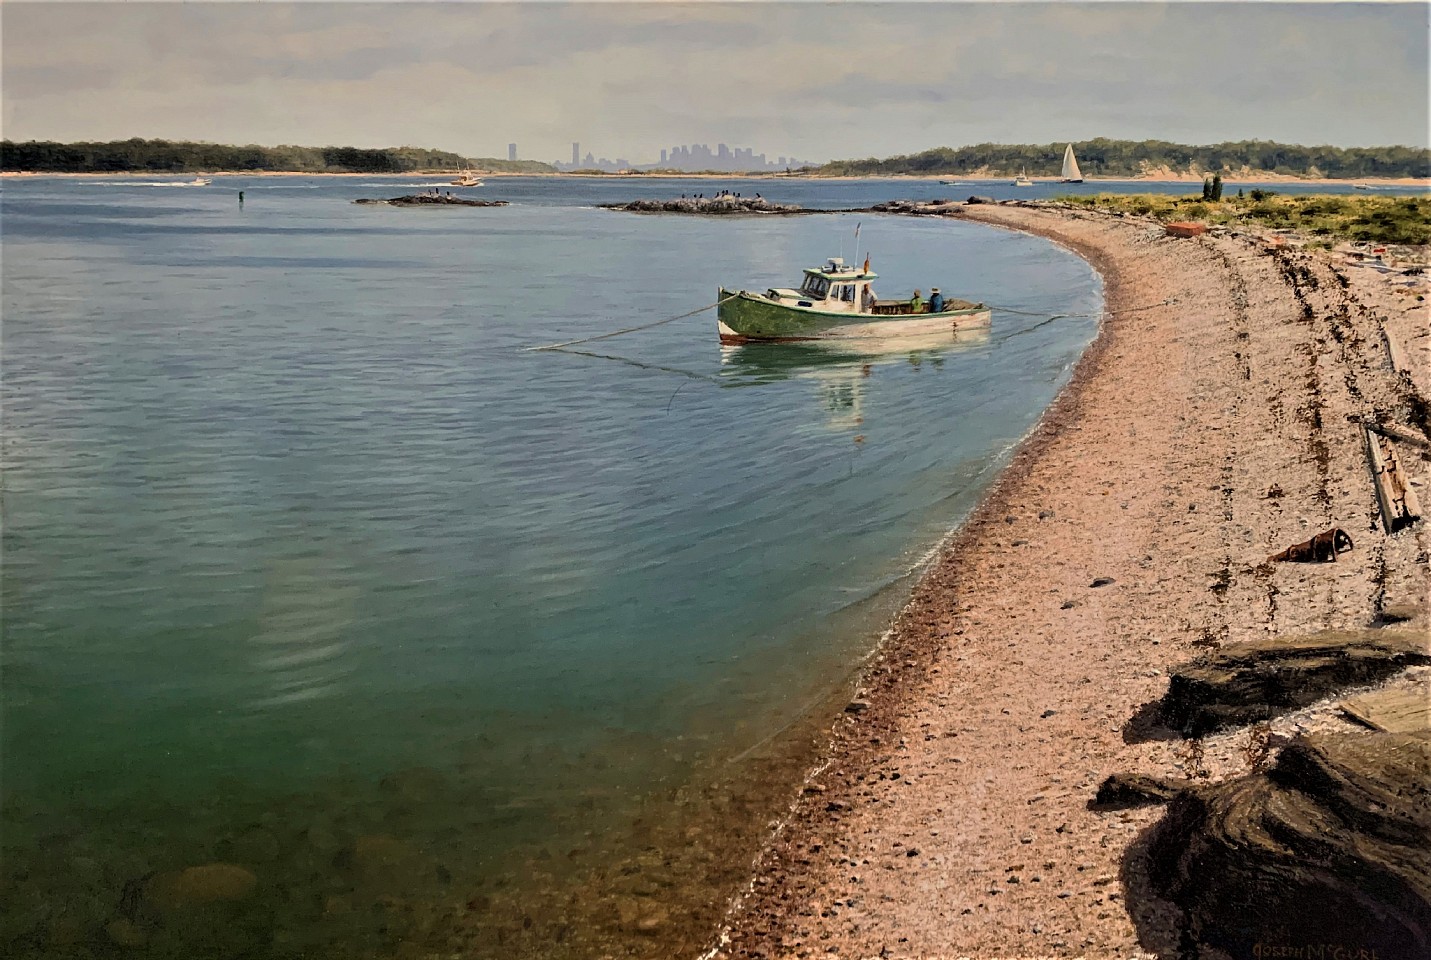 Joseph McGurl, The Boston Harbor Islands Project, The Western Cove, Rainsford Island, 2019
oil on canvas, 20 x 30 in. (50.8 x 76.2 cm)
JM190701